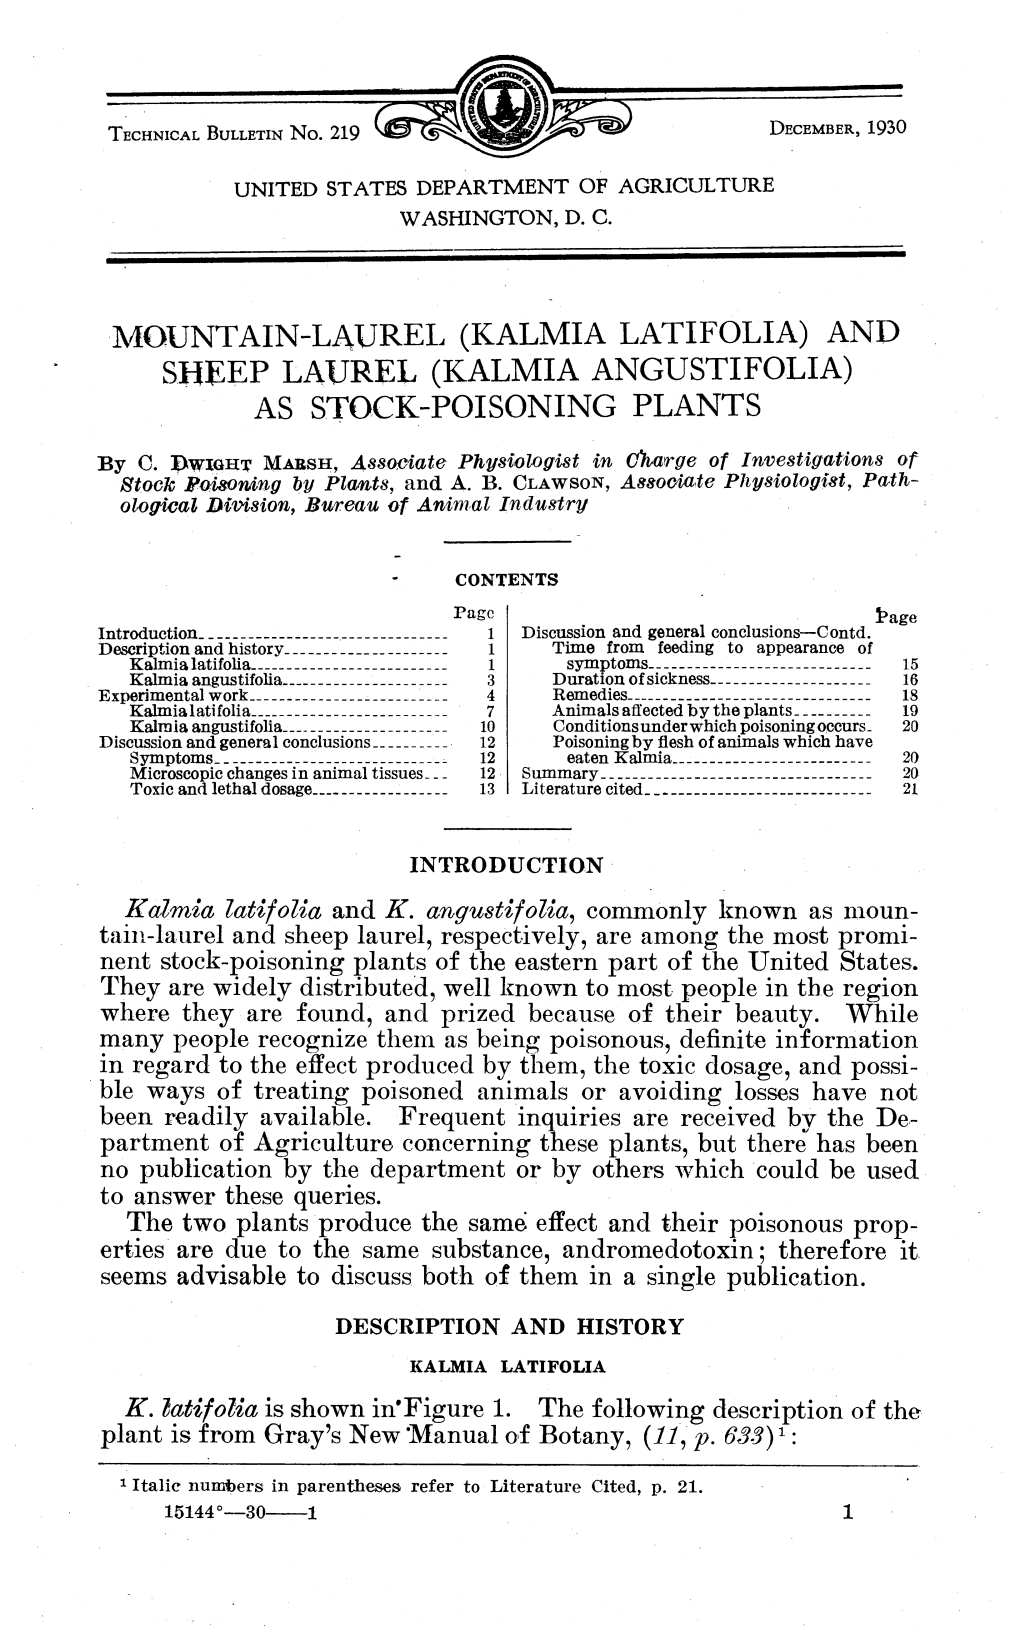 Mountain-Laurel (Kalmia Latifolia) and Sheep Laurel (Kalmia Angustifolia) As Stock-Poisoning Plants